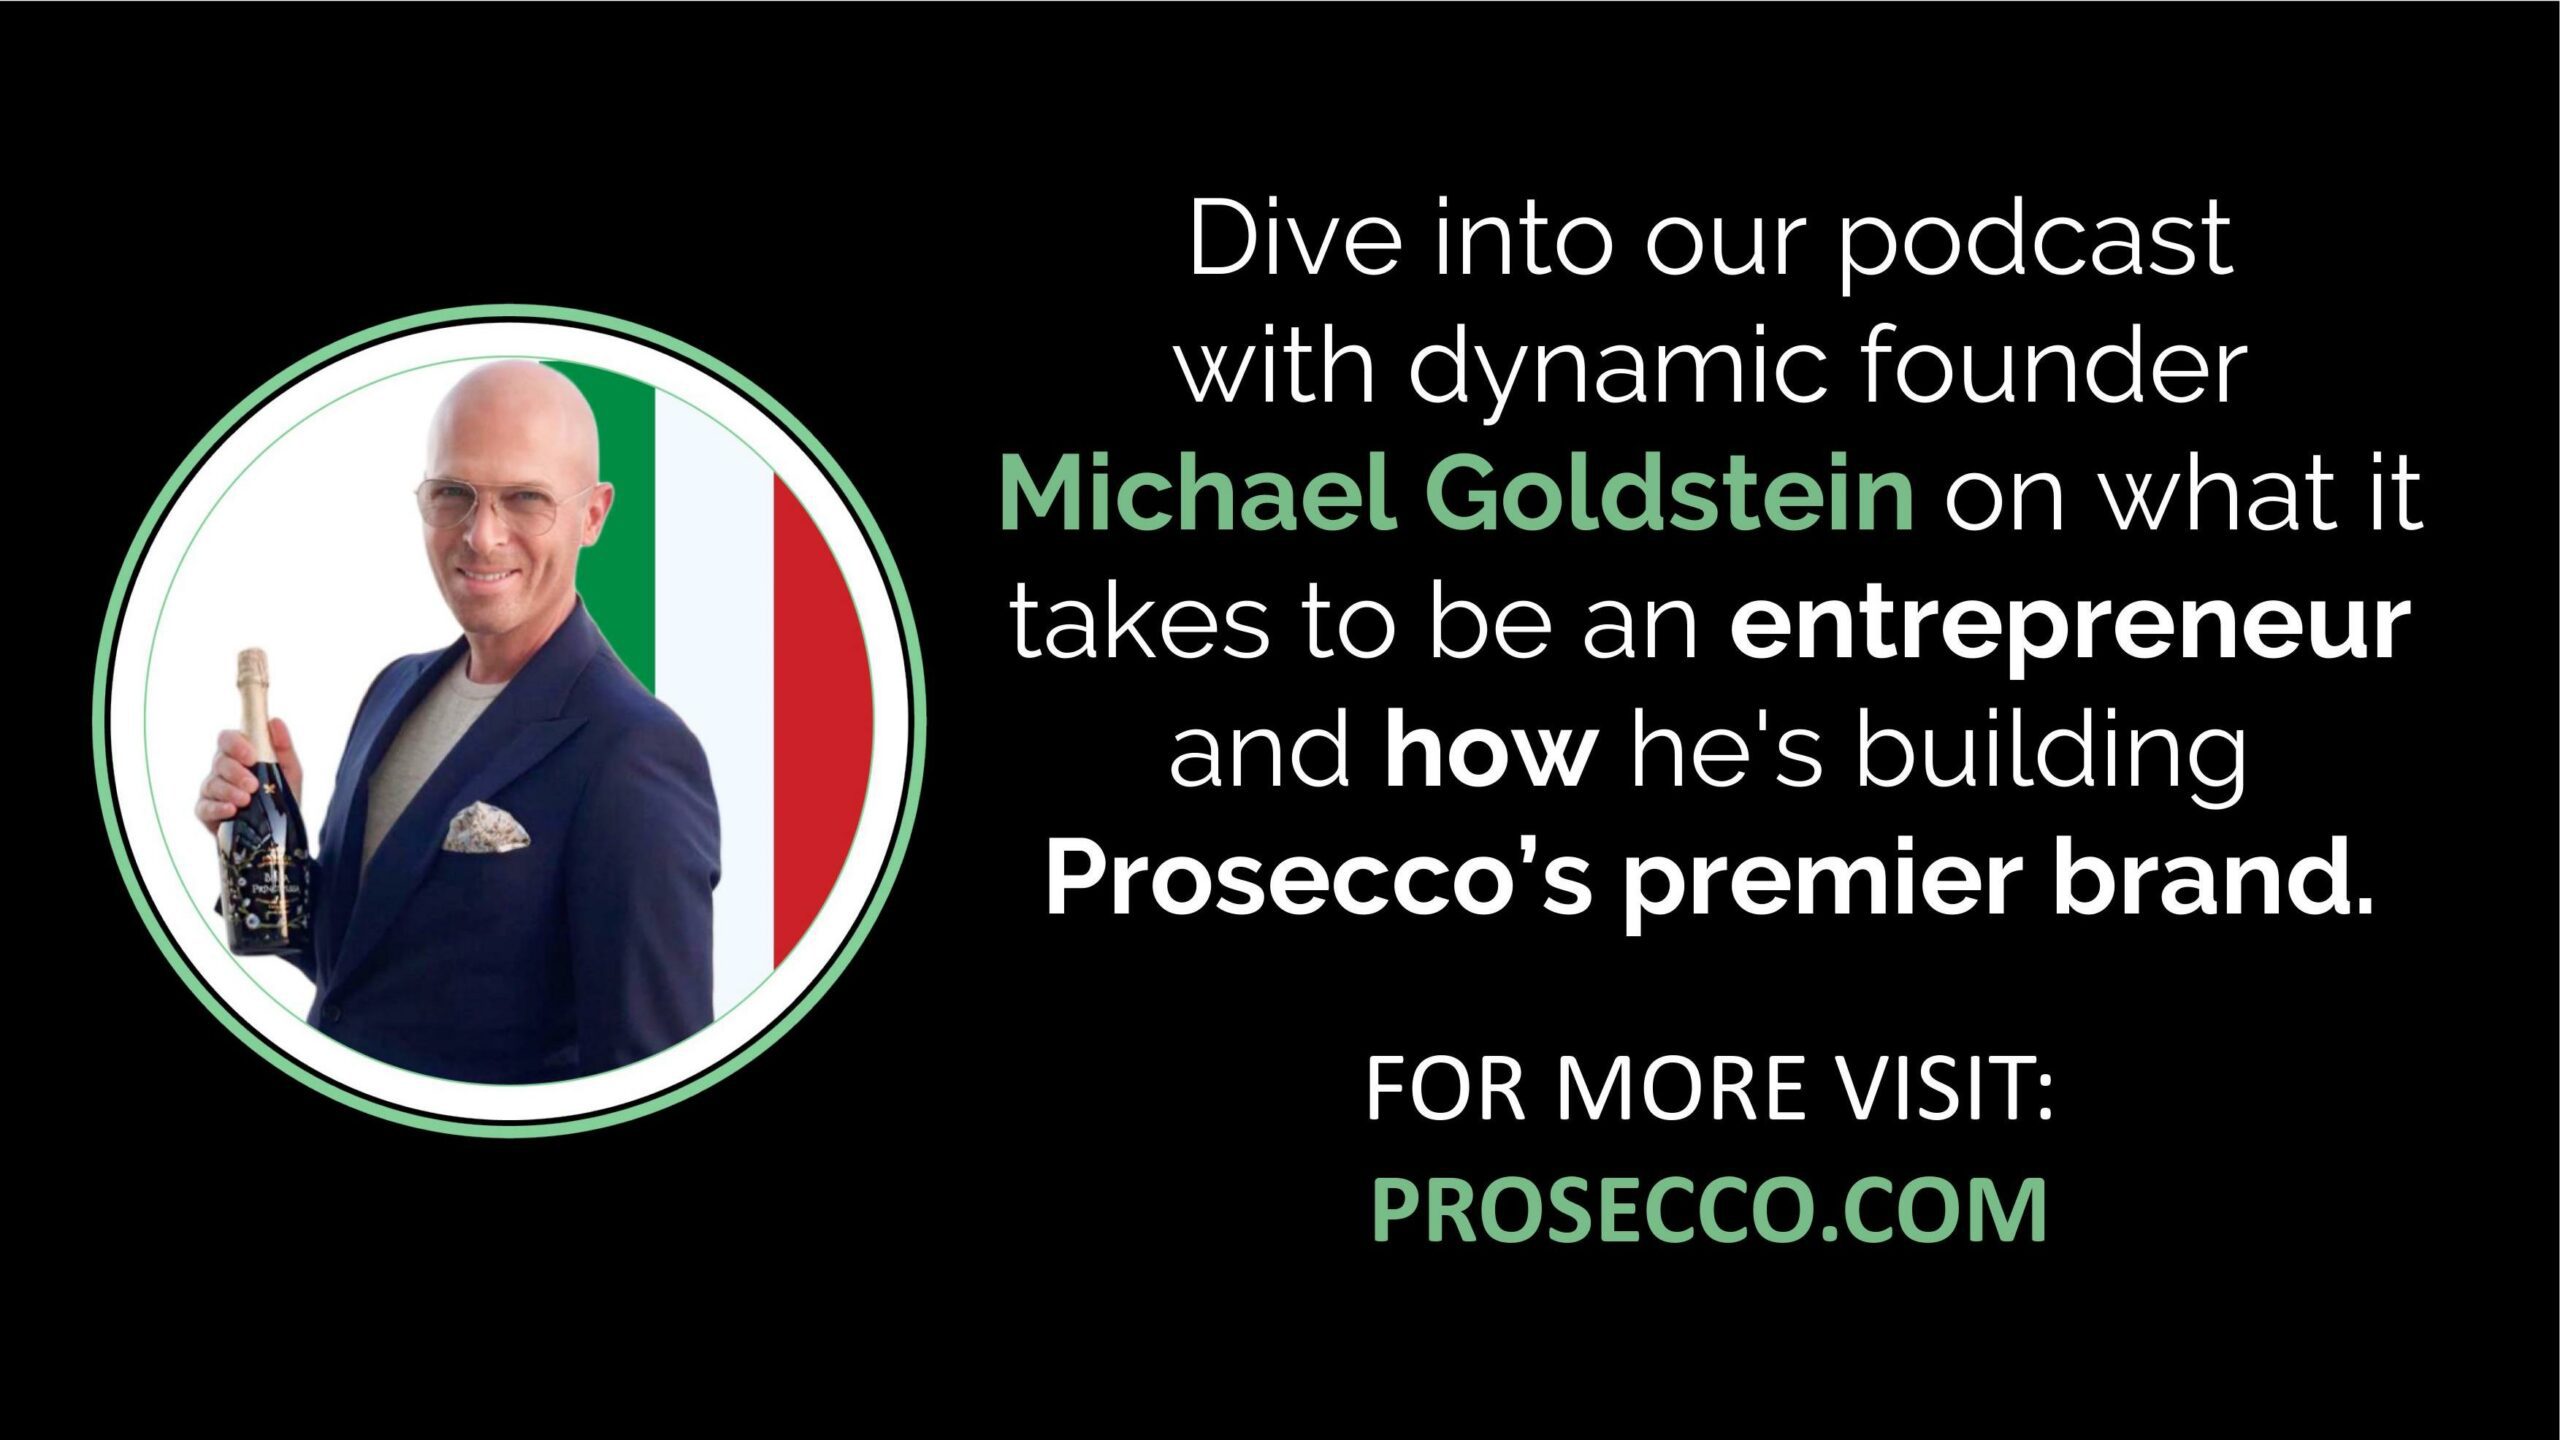 Michael Goldstein Interview: Aufbau der Top-Marke von Prosecco (Podcast)